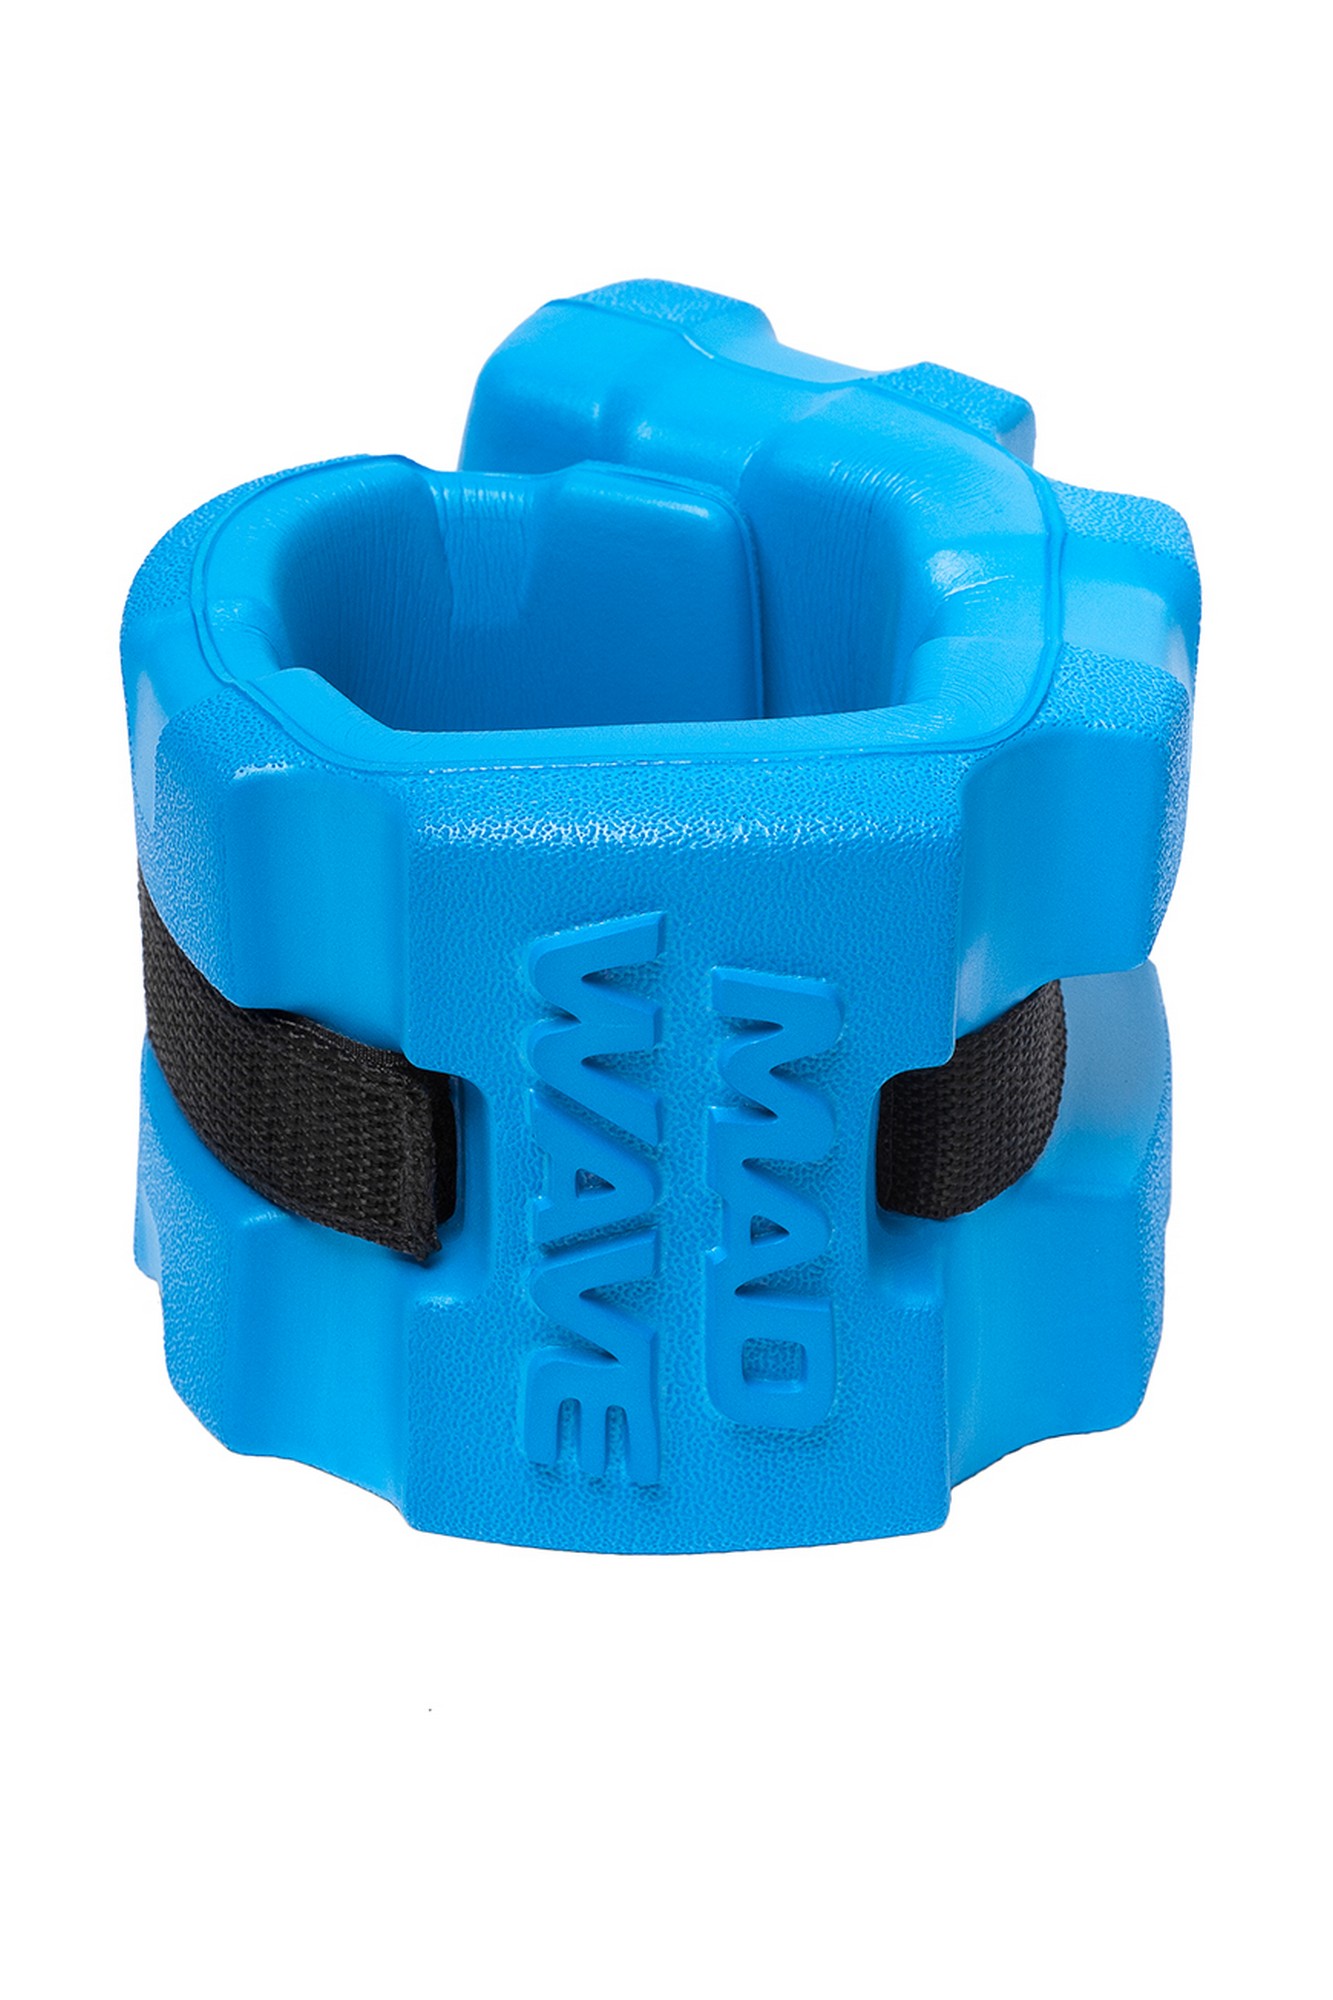 Акваманжеты Mad Wave Aqua fitness cuffs, pair M0829 05 1 03W размер S 1333_2000